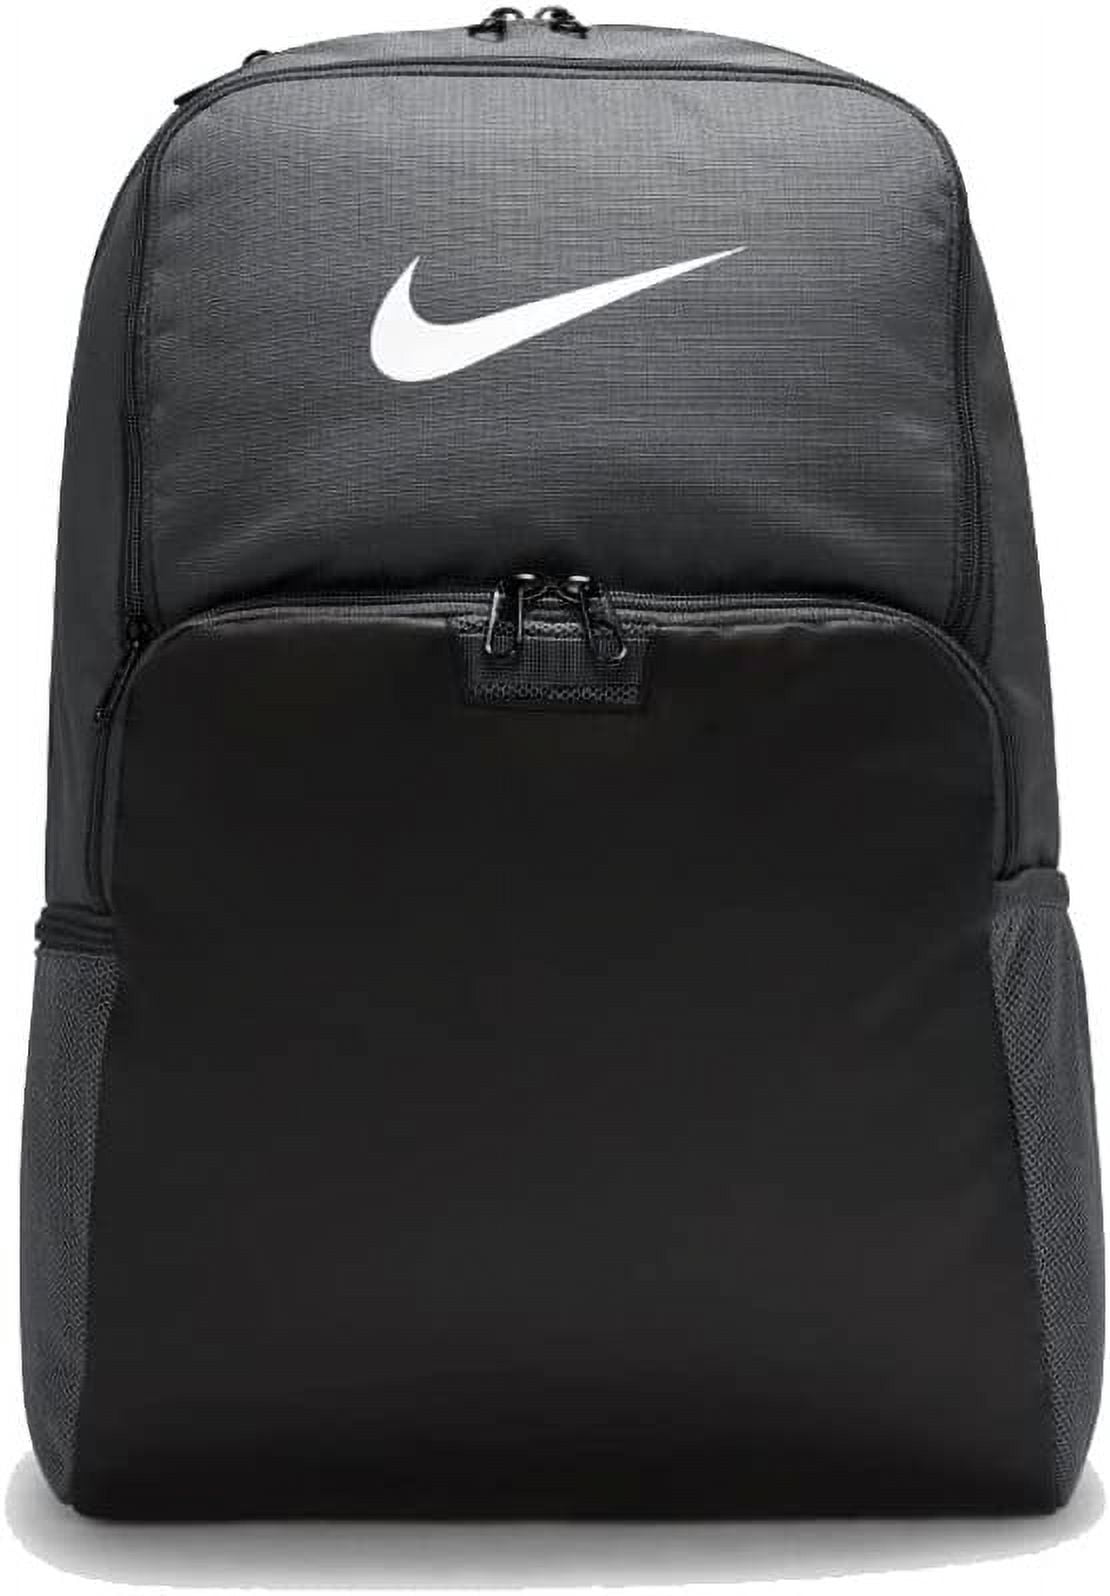 Nike Brasilia Extra Large Olive Camo Training Backpack